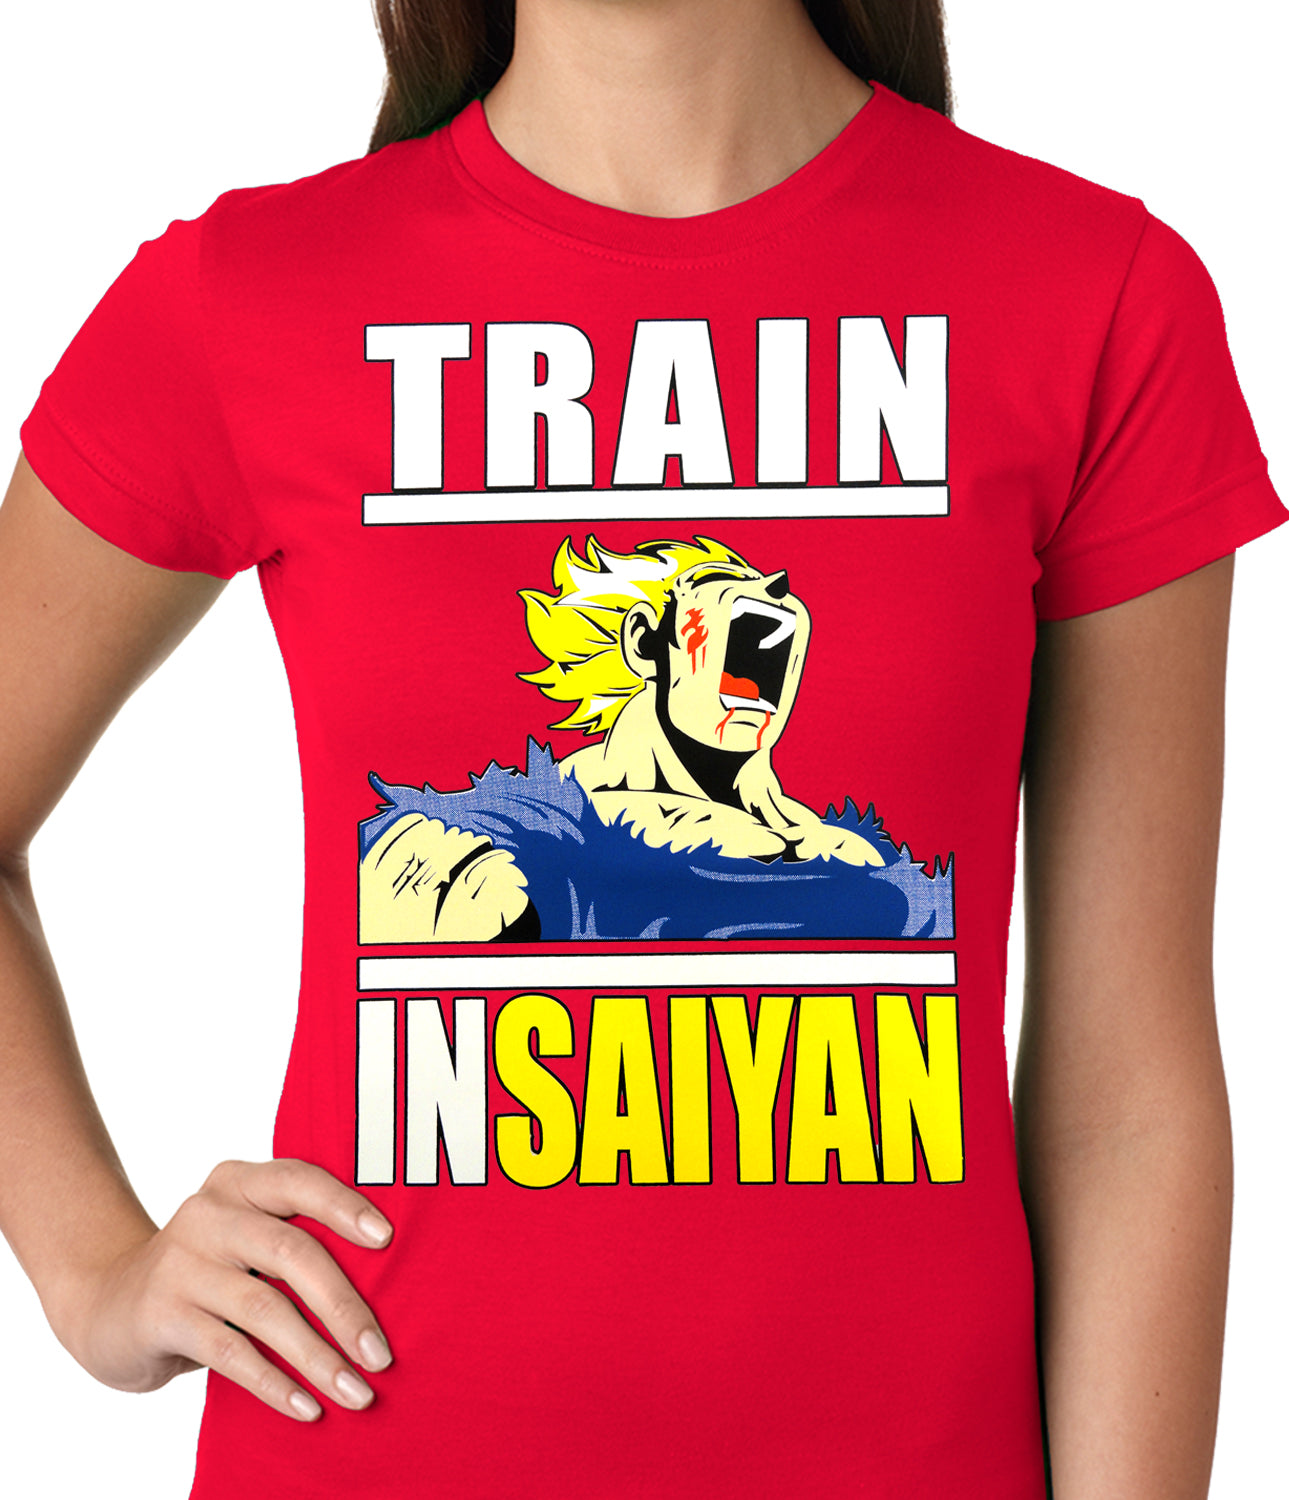 Train Like Insaiyan Ladies T-shirt